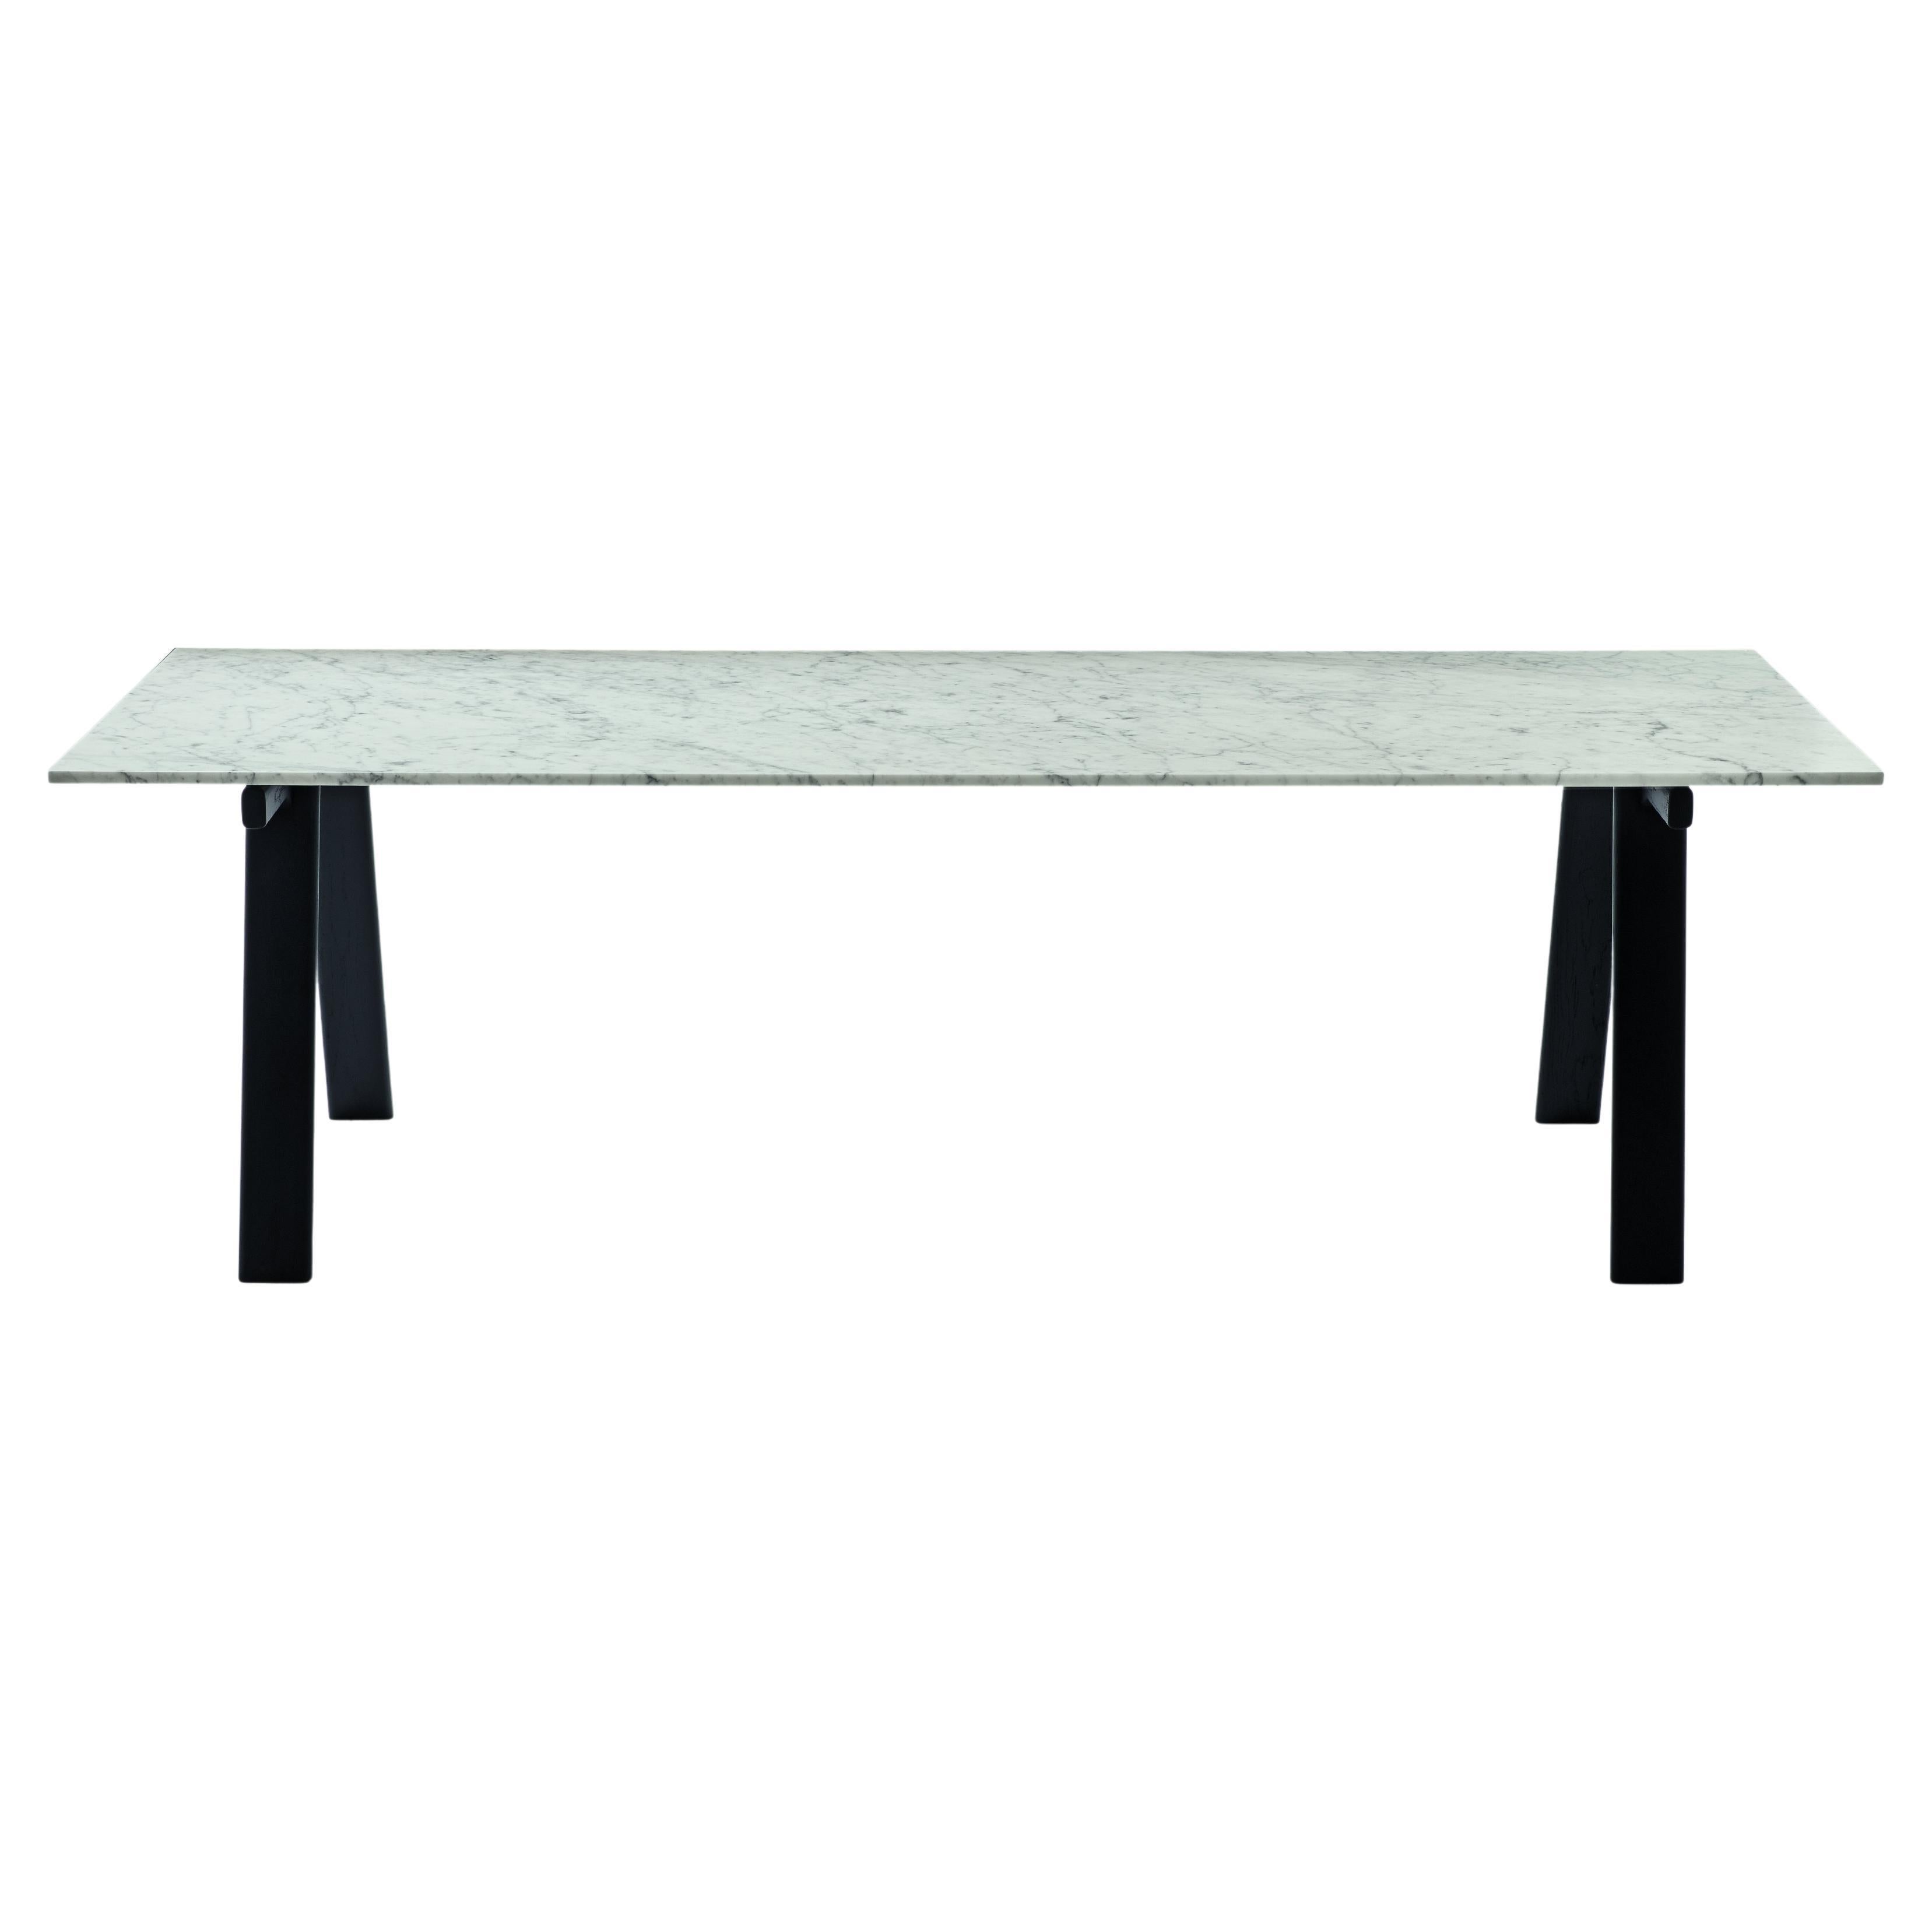 Kleiner Zanotta-Tisch Ambrosiano aus Carrara-Marmor mit schwarzem Rahmen von Mist-o